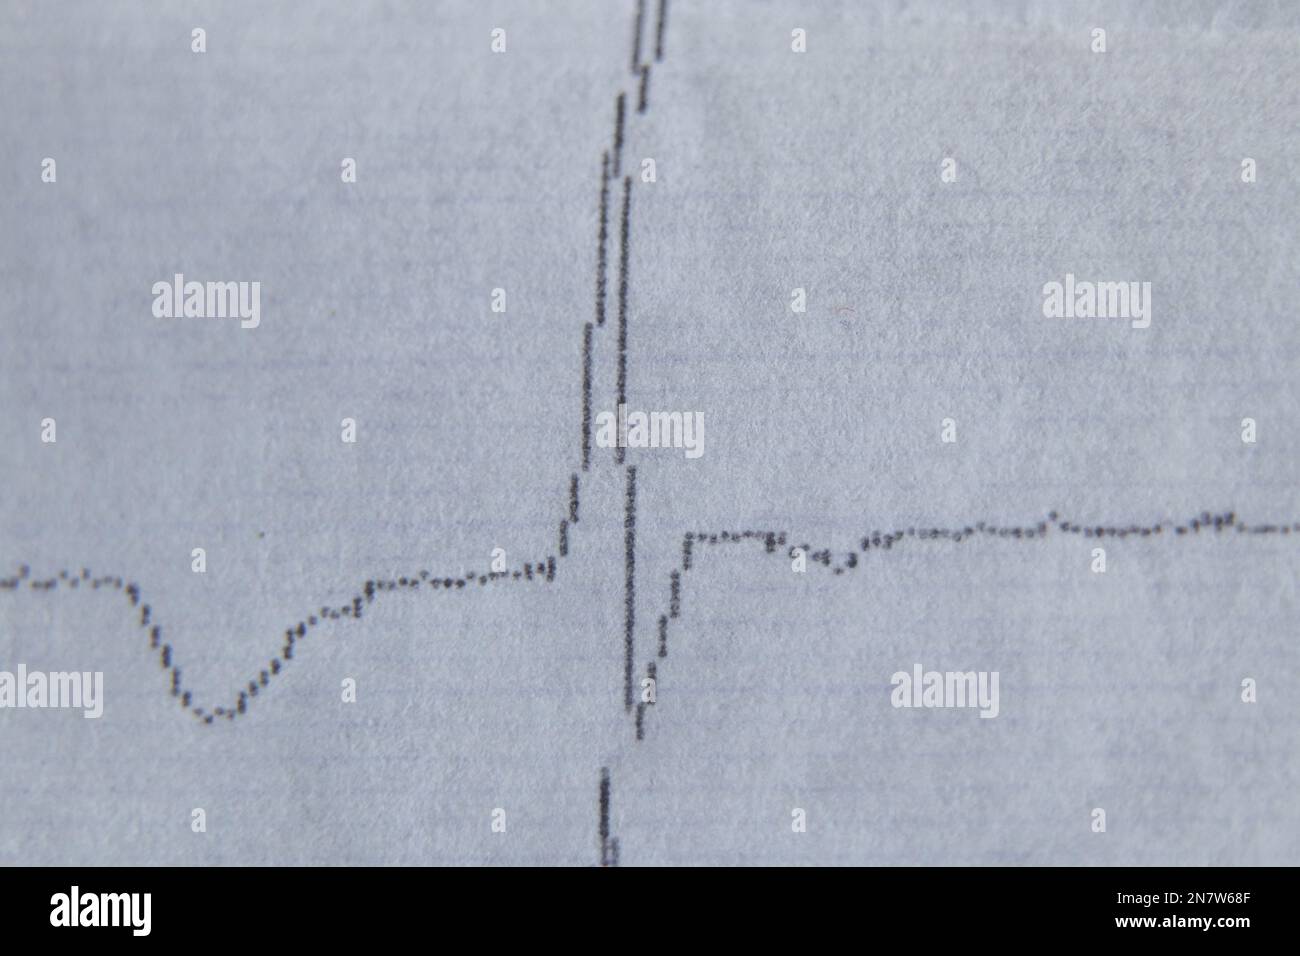 cardiogramma su carta vecchia come foto macro di sfondo Foto Stock